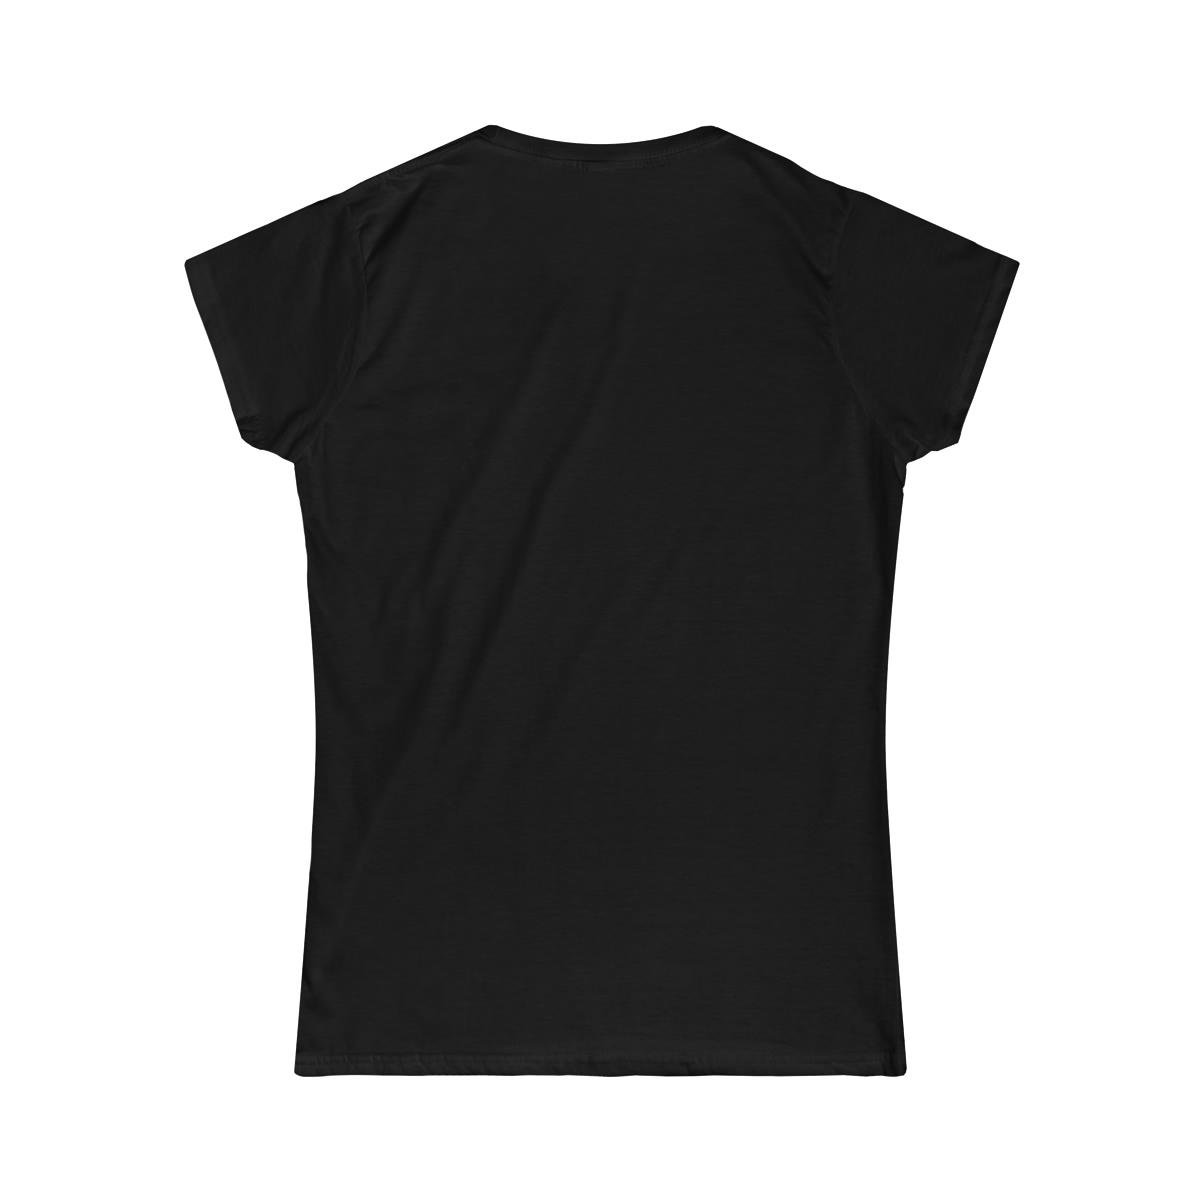 Motivik Chrome Logo Women’s Short Sleeve Tshirt